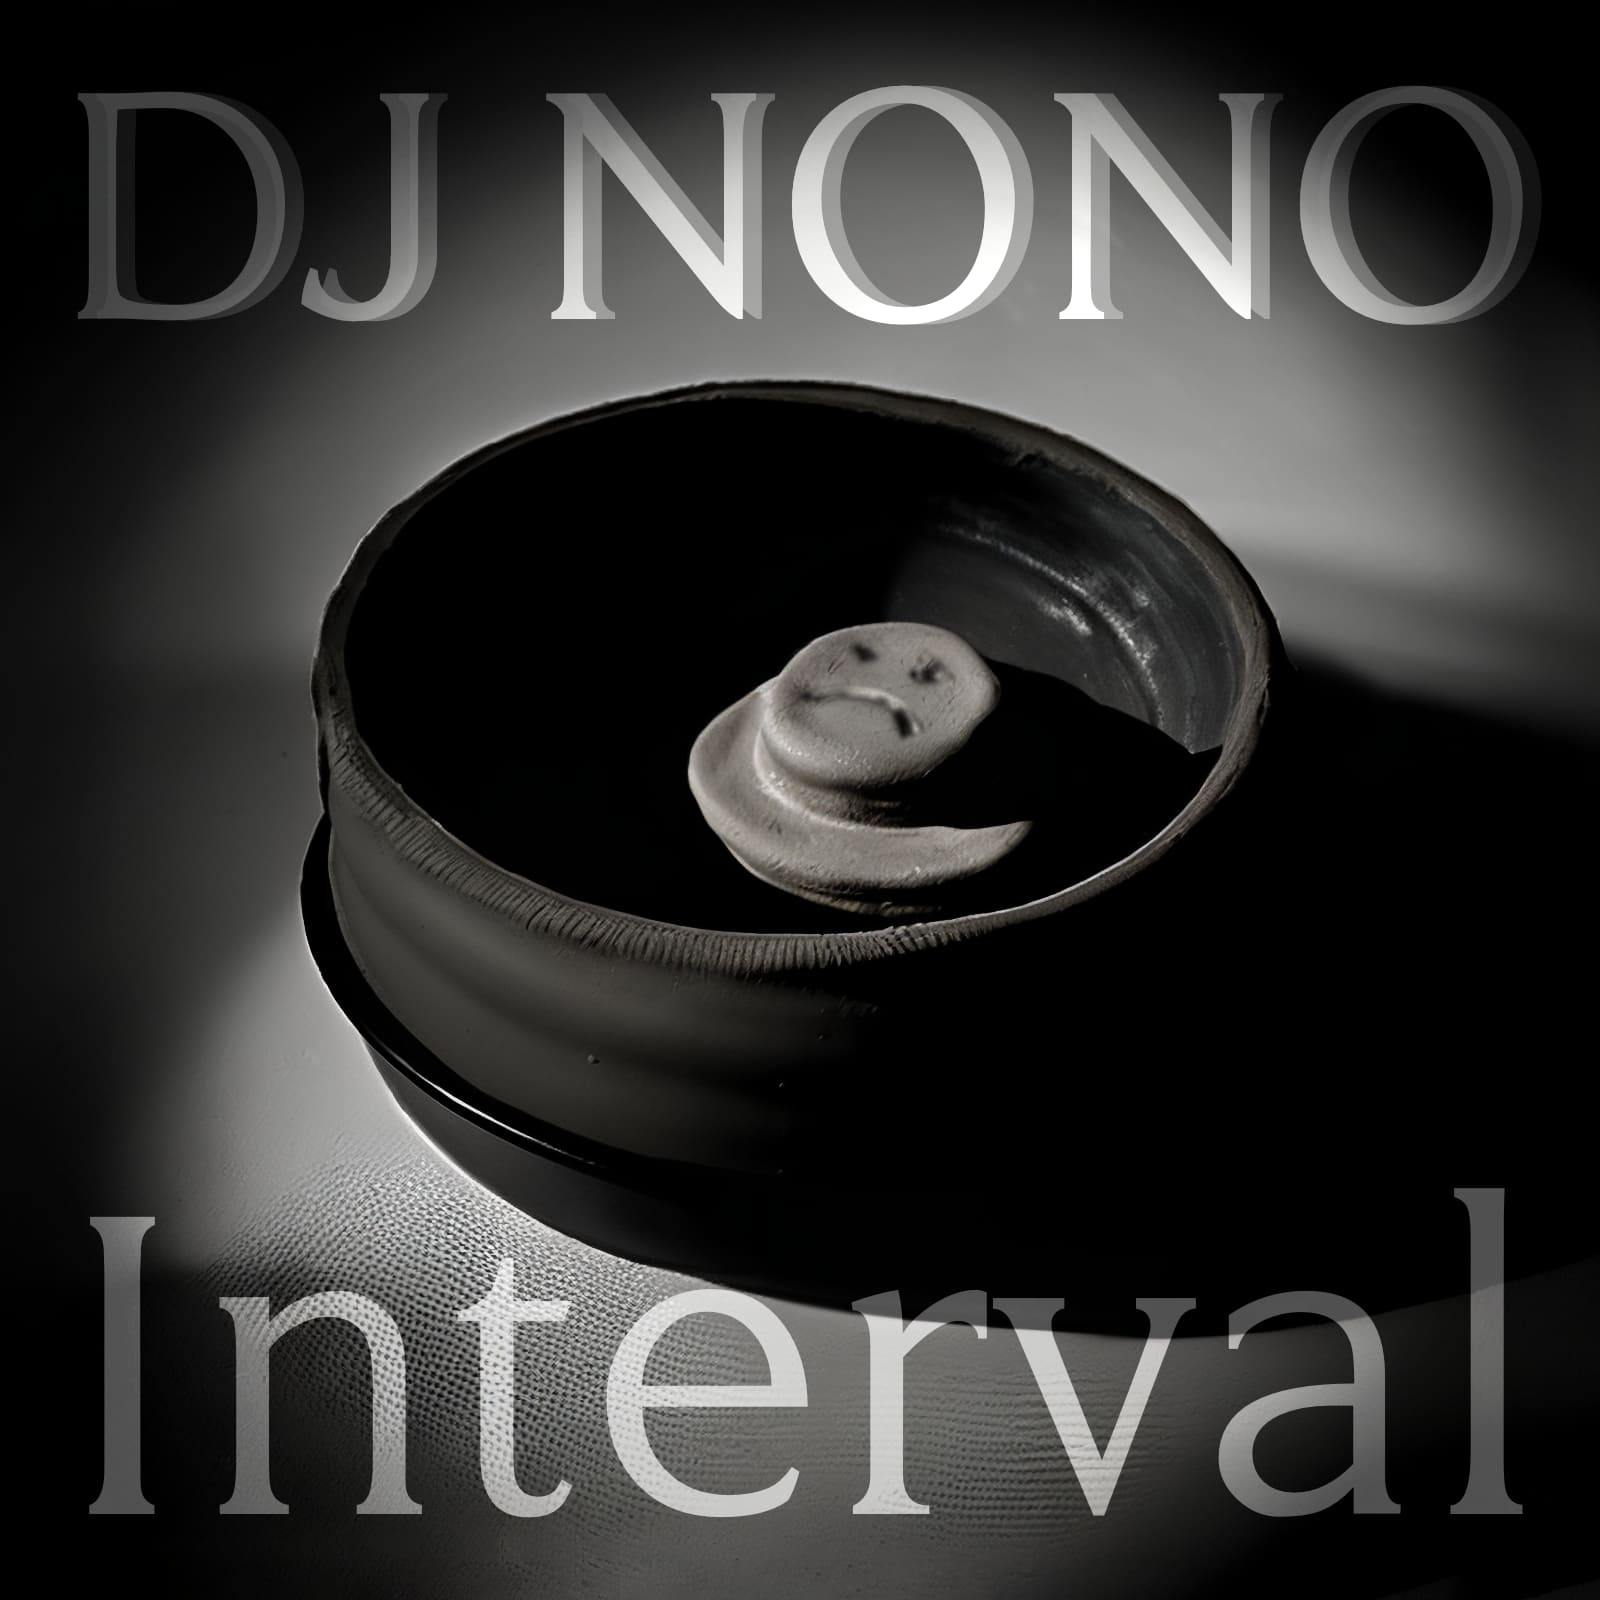 New DJNoNo album – Interval